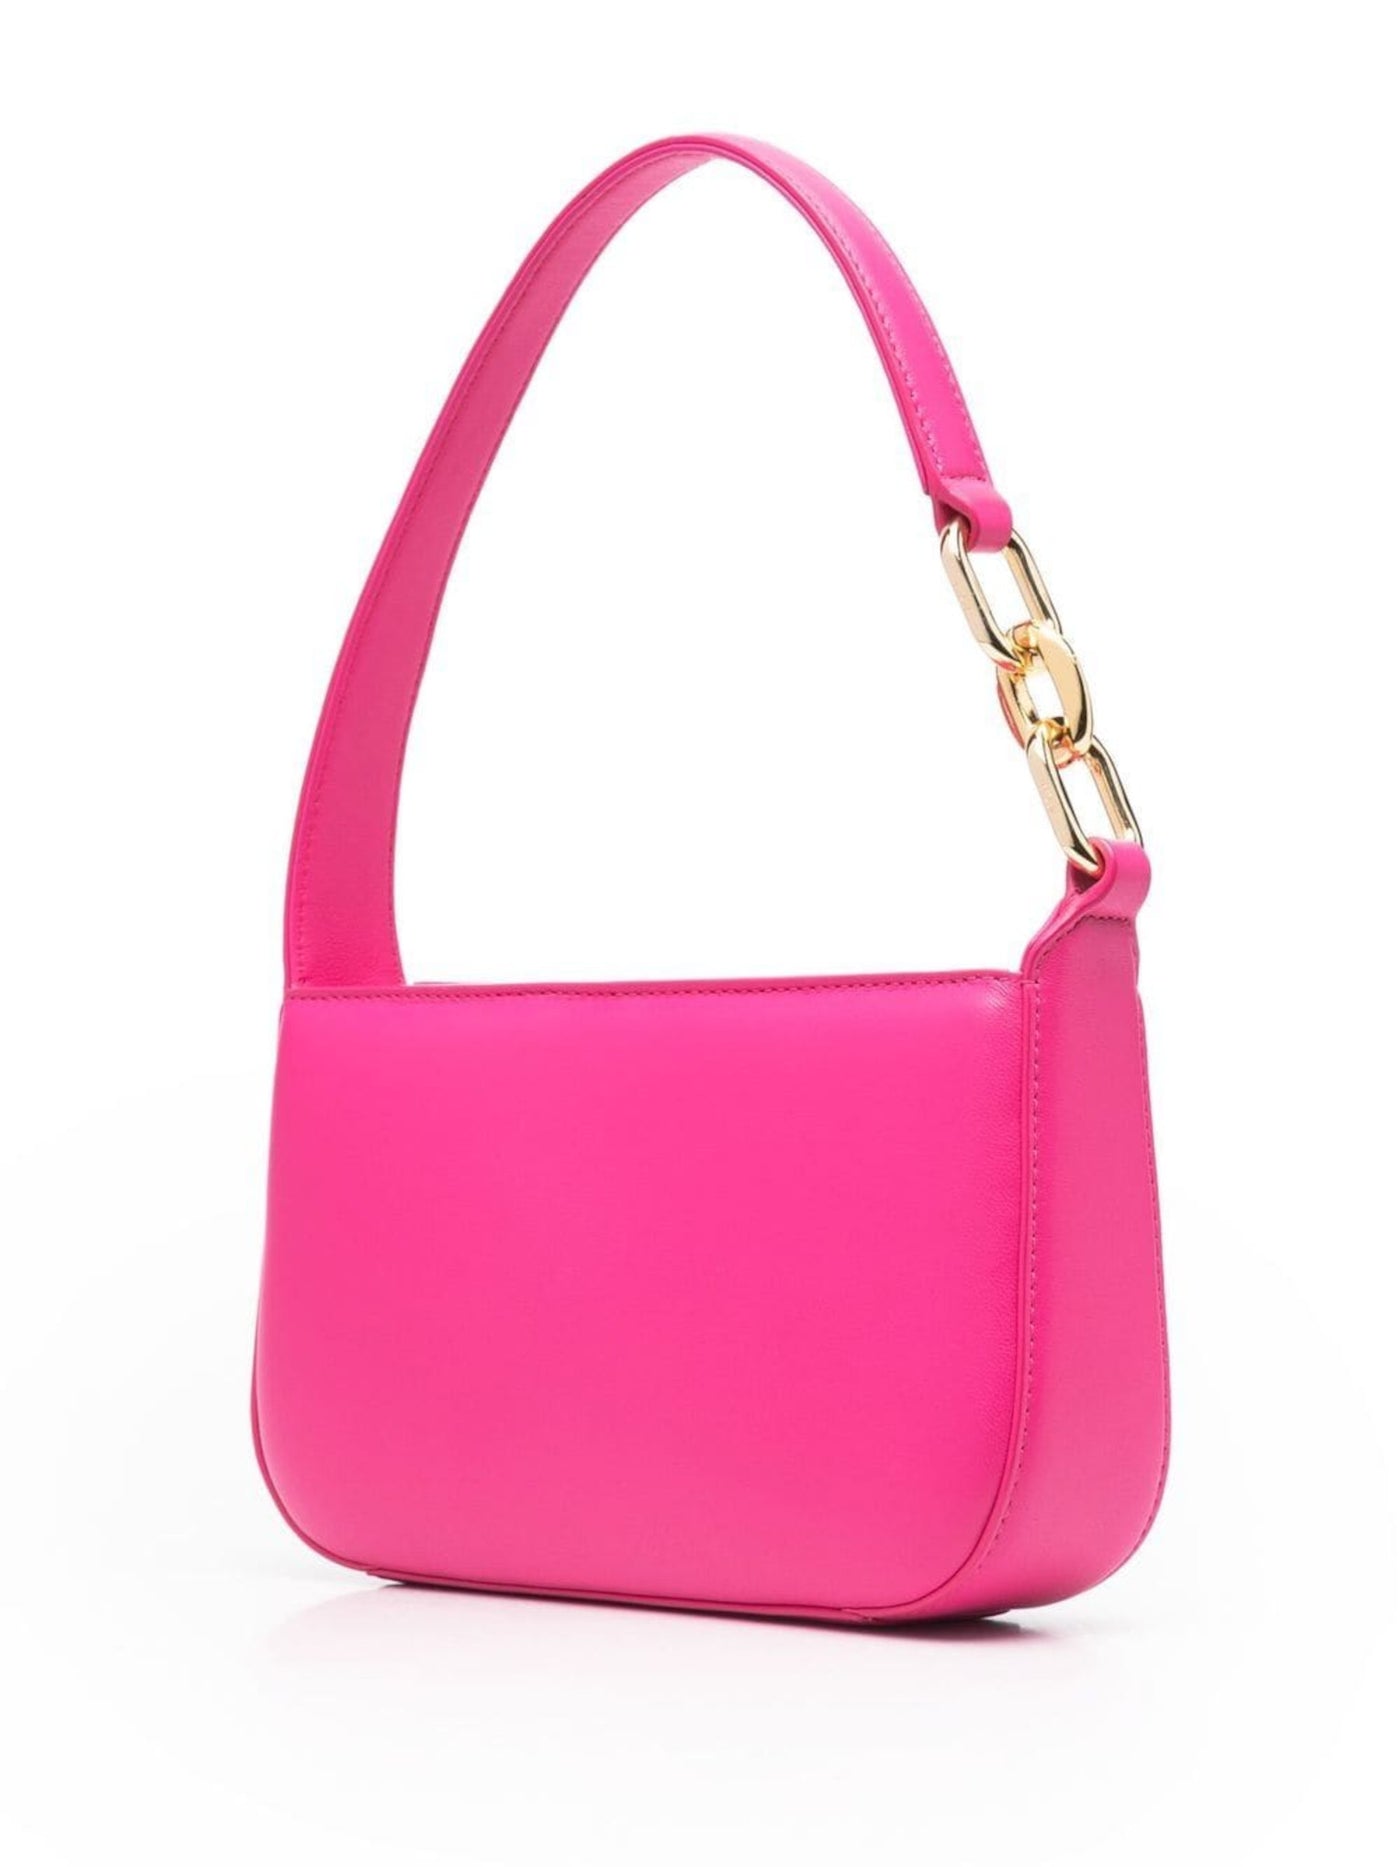 MCM Women's Pink Solid Leather Single Strap Shoulder Bag